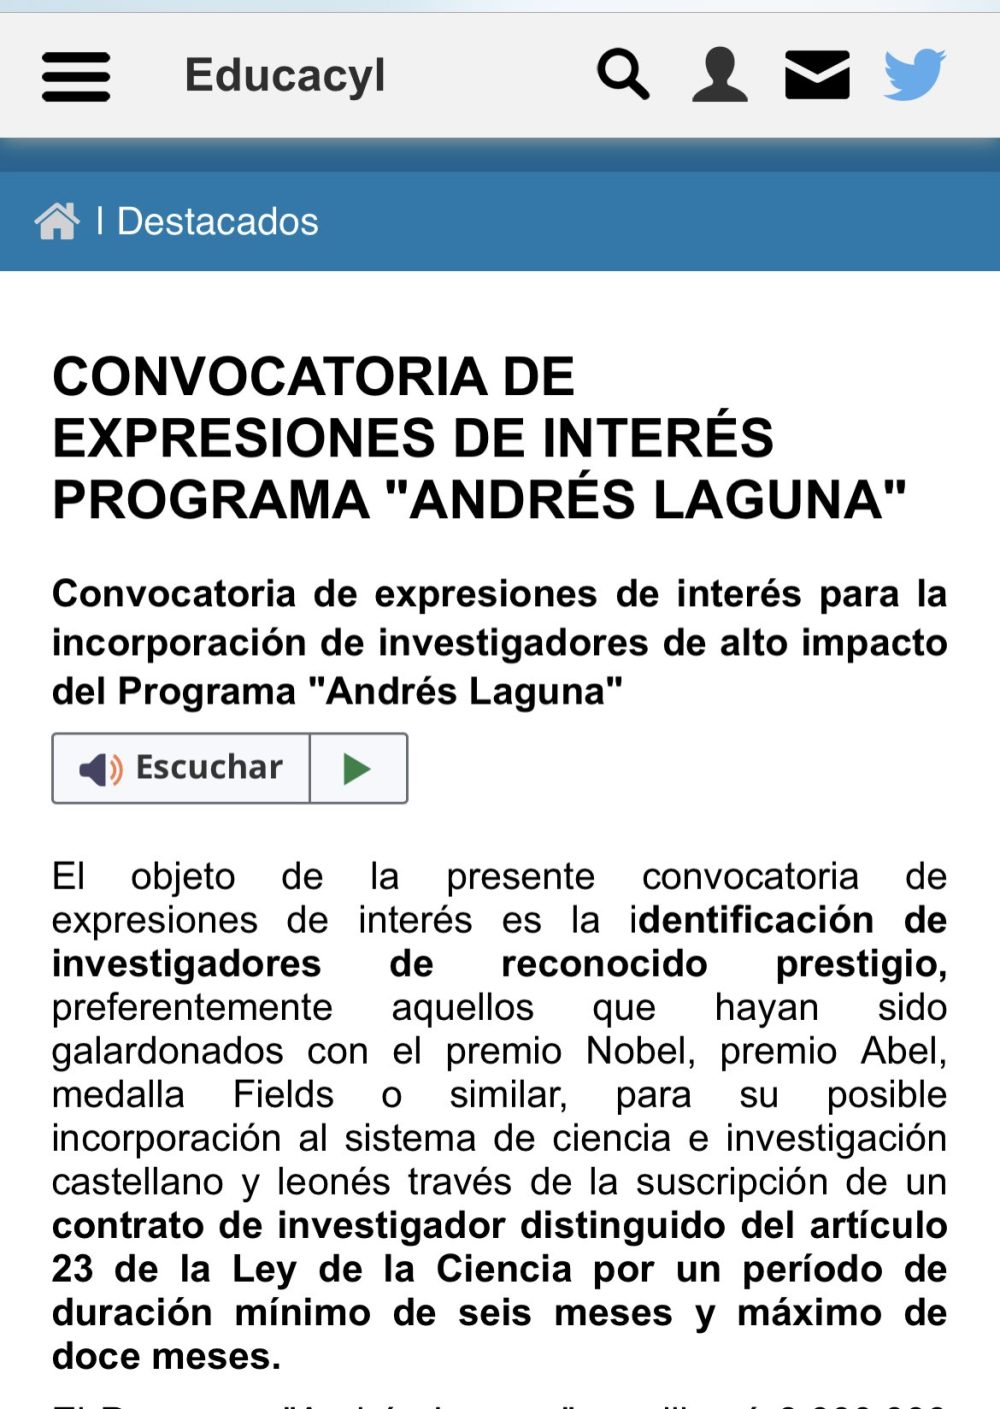 La Junta de Castilla y León ha sacado una convocatoria de investigadores en la que ofrece un contrato de 6 meses o un año, y piden "preferiblemente gente con PREMIOS NOBEL".